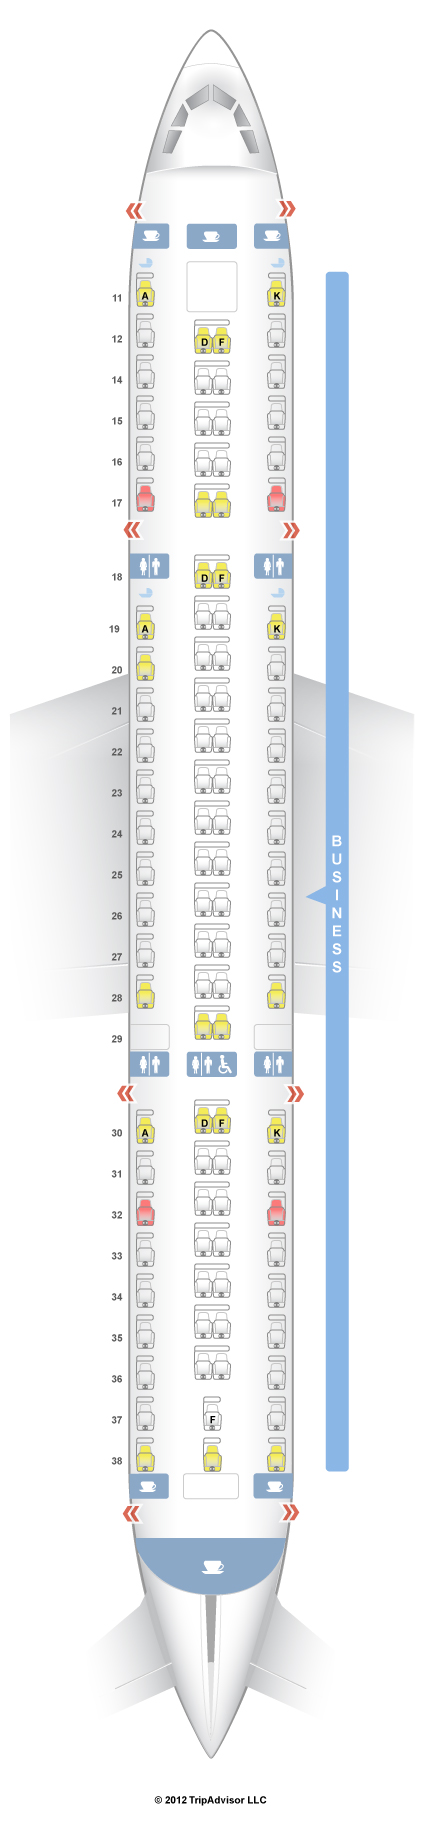 SeatGuru Seat Map Singapore Airlines